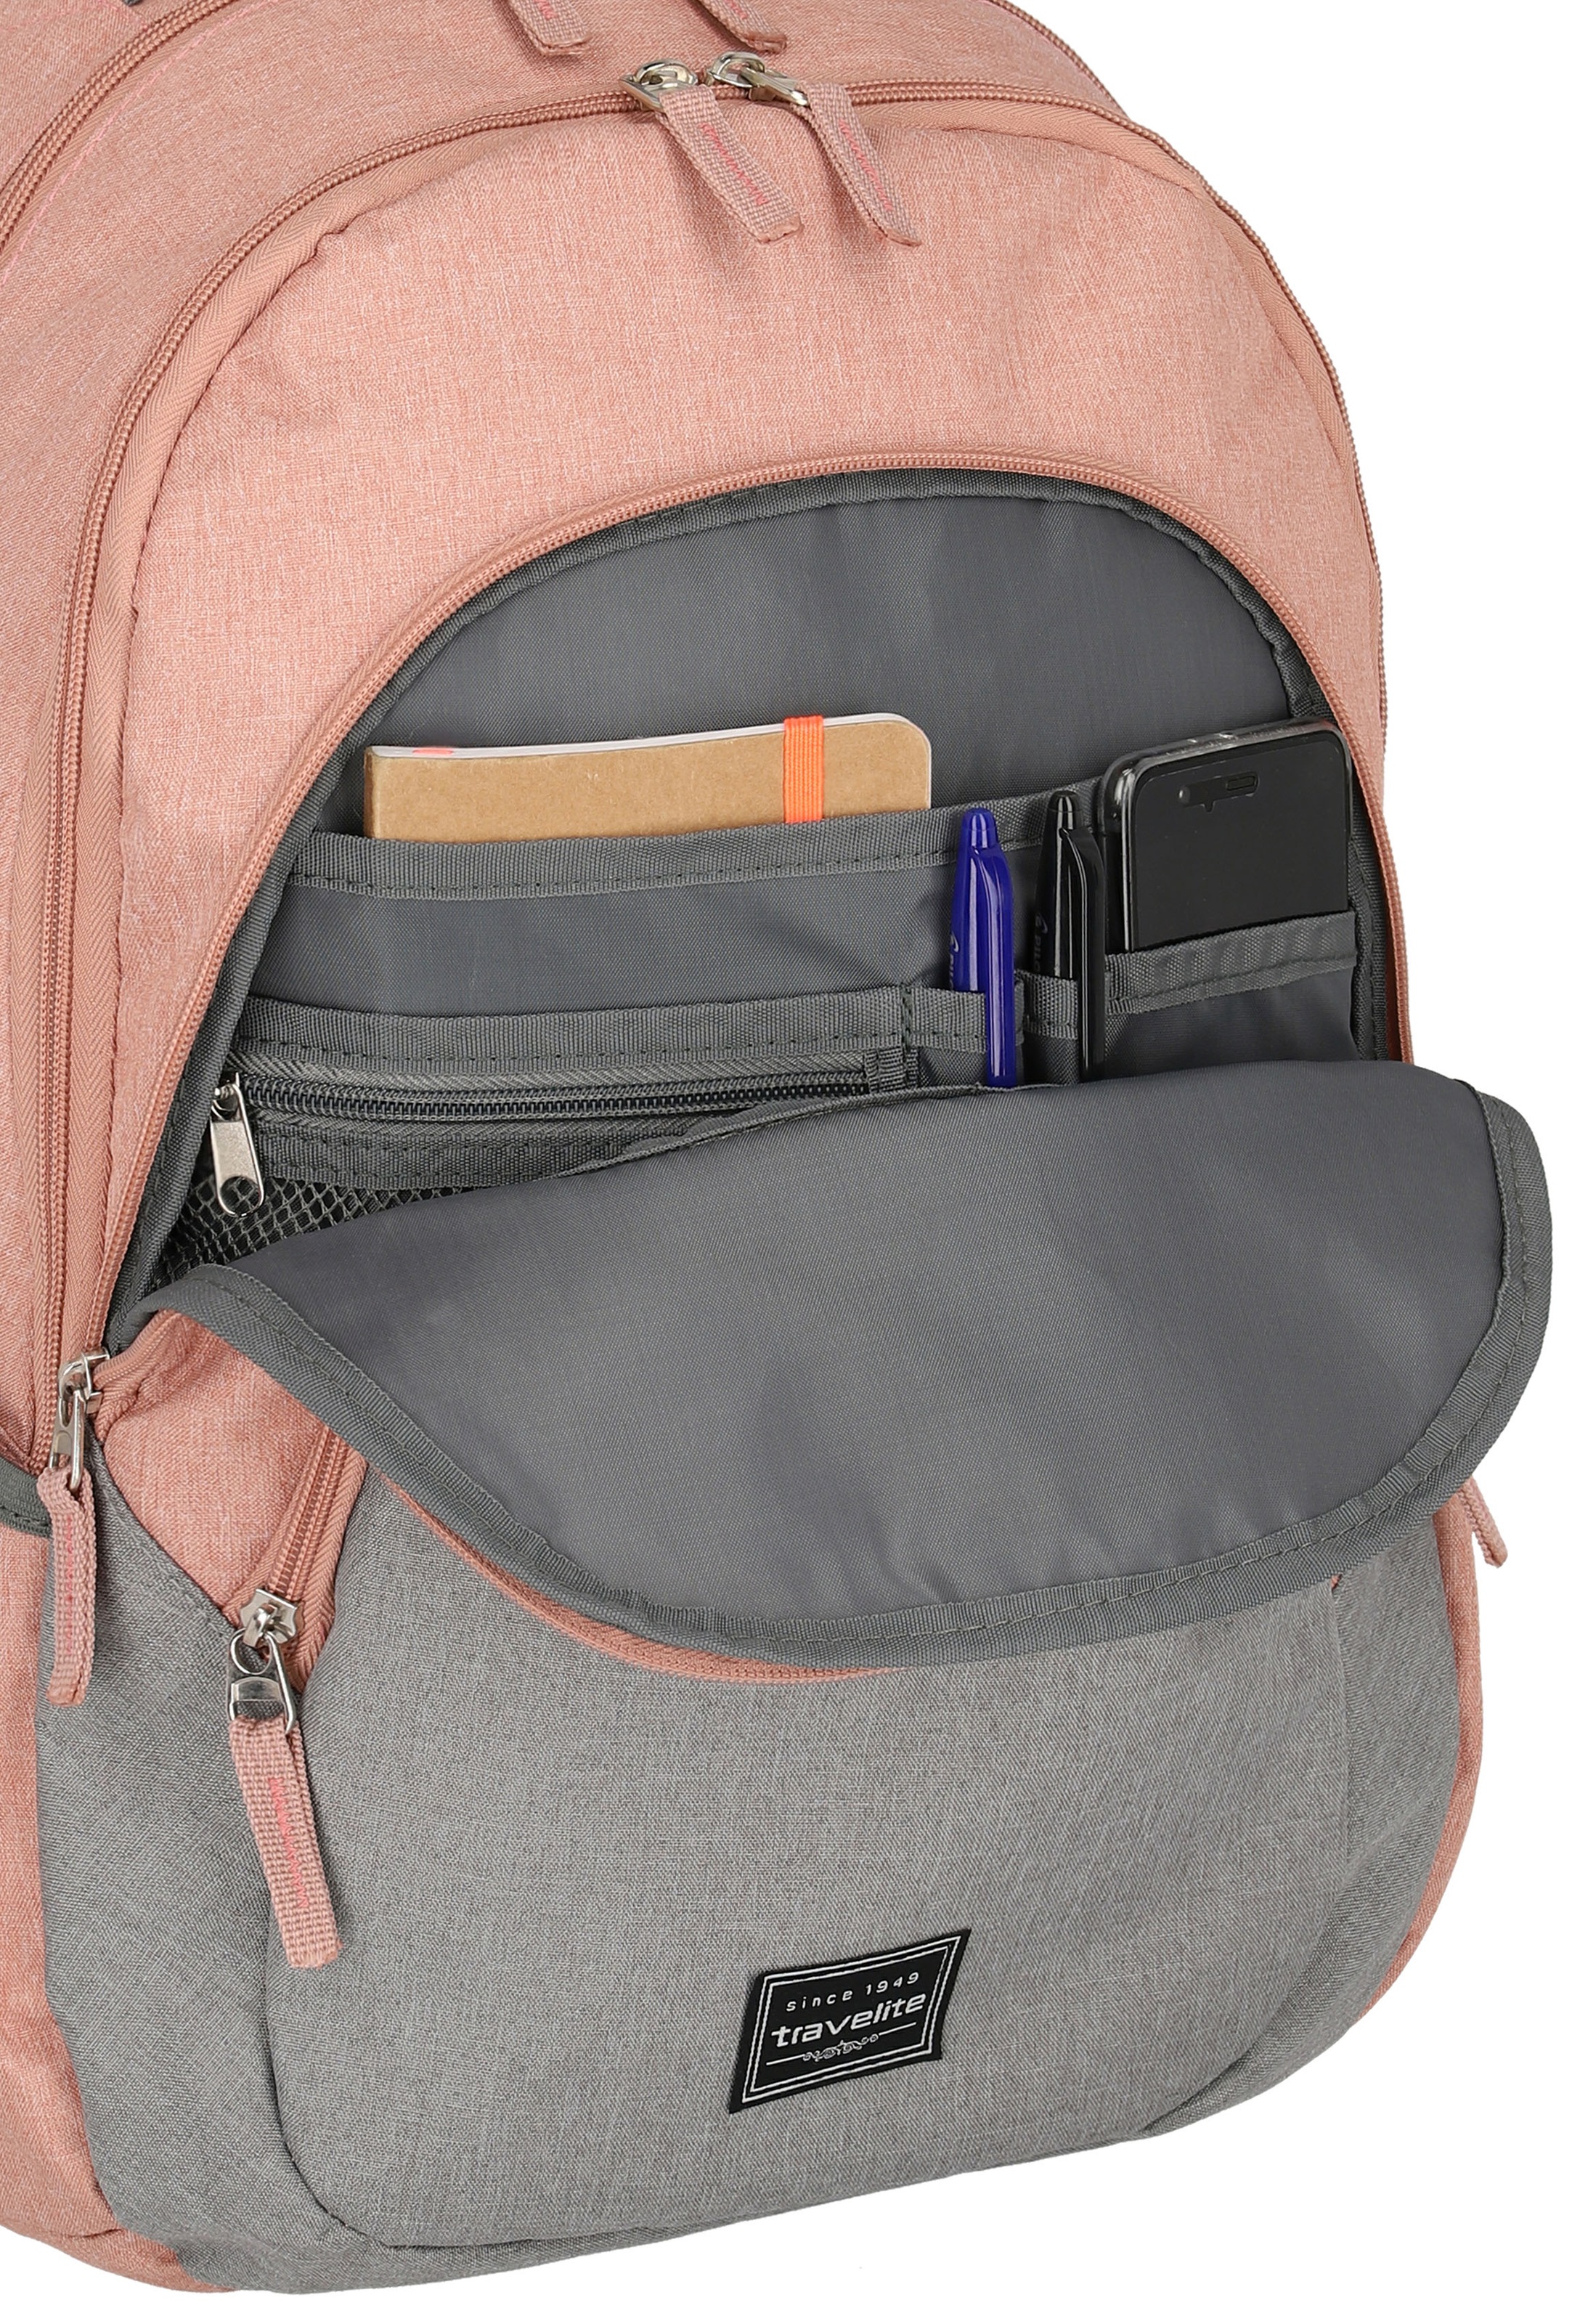 travelite Laptoprucksack »Basics Melange, rosa/grau«, Arbeitsrucksack Schulrucksack Freizeitrucksack mit 15-Zoll Laptopfach